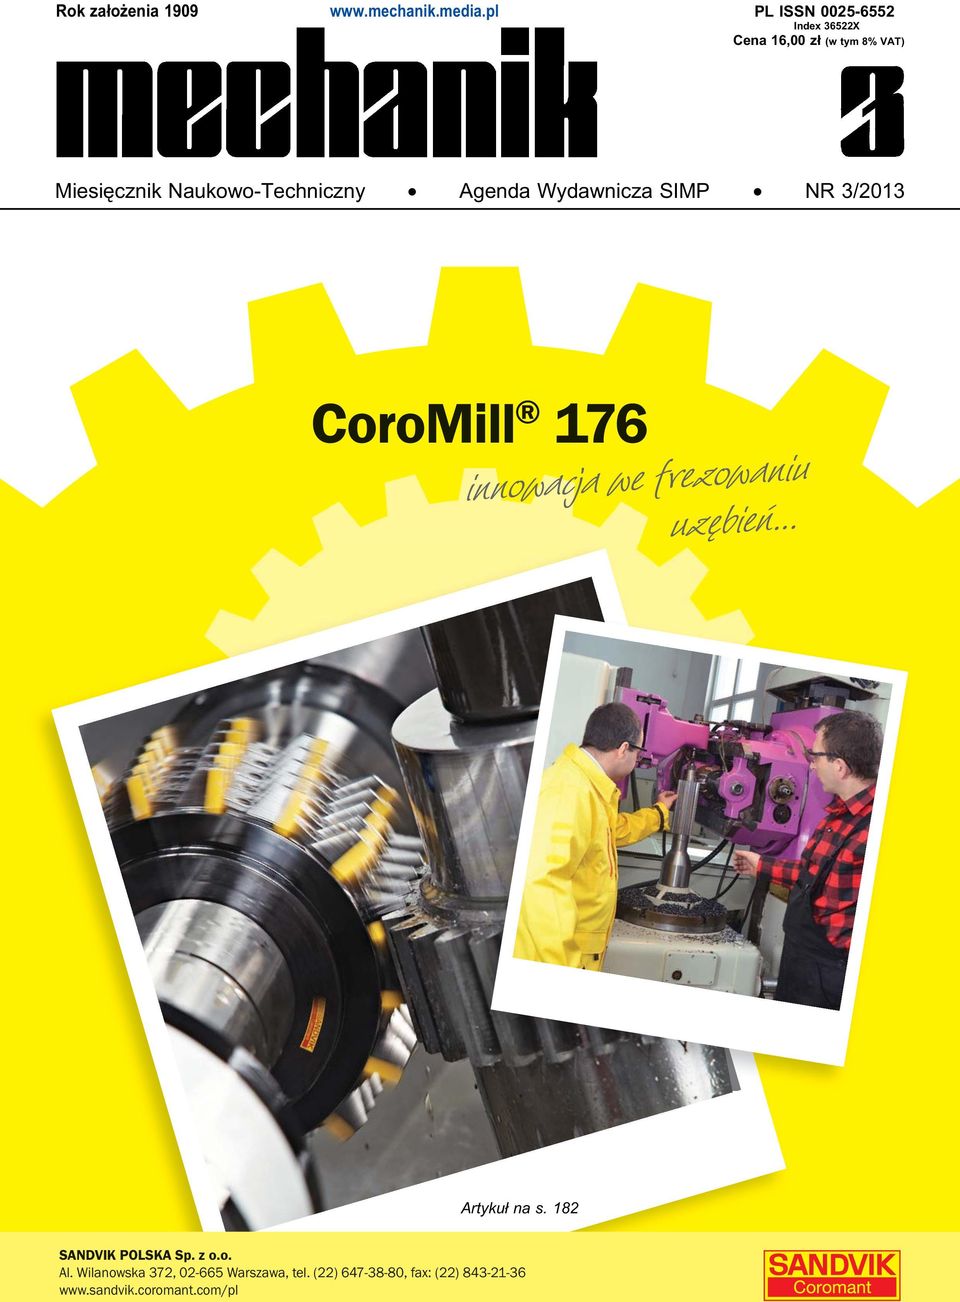 Naukowo-Techniczny Agenda Wydawnicza SIMP NR 3/2013 CoroMill 176 innowacja we